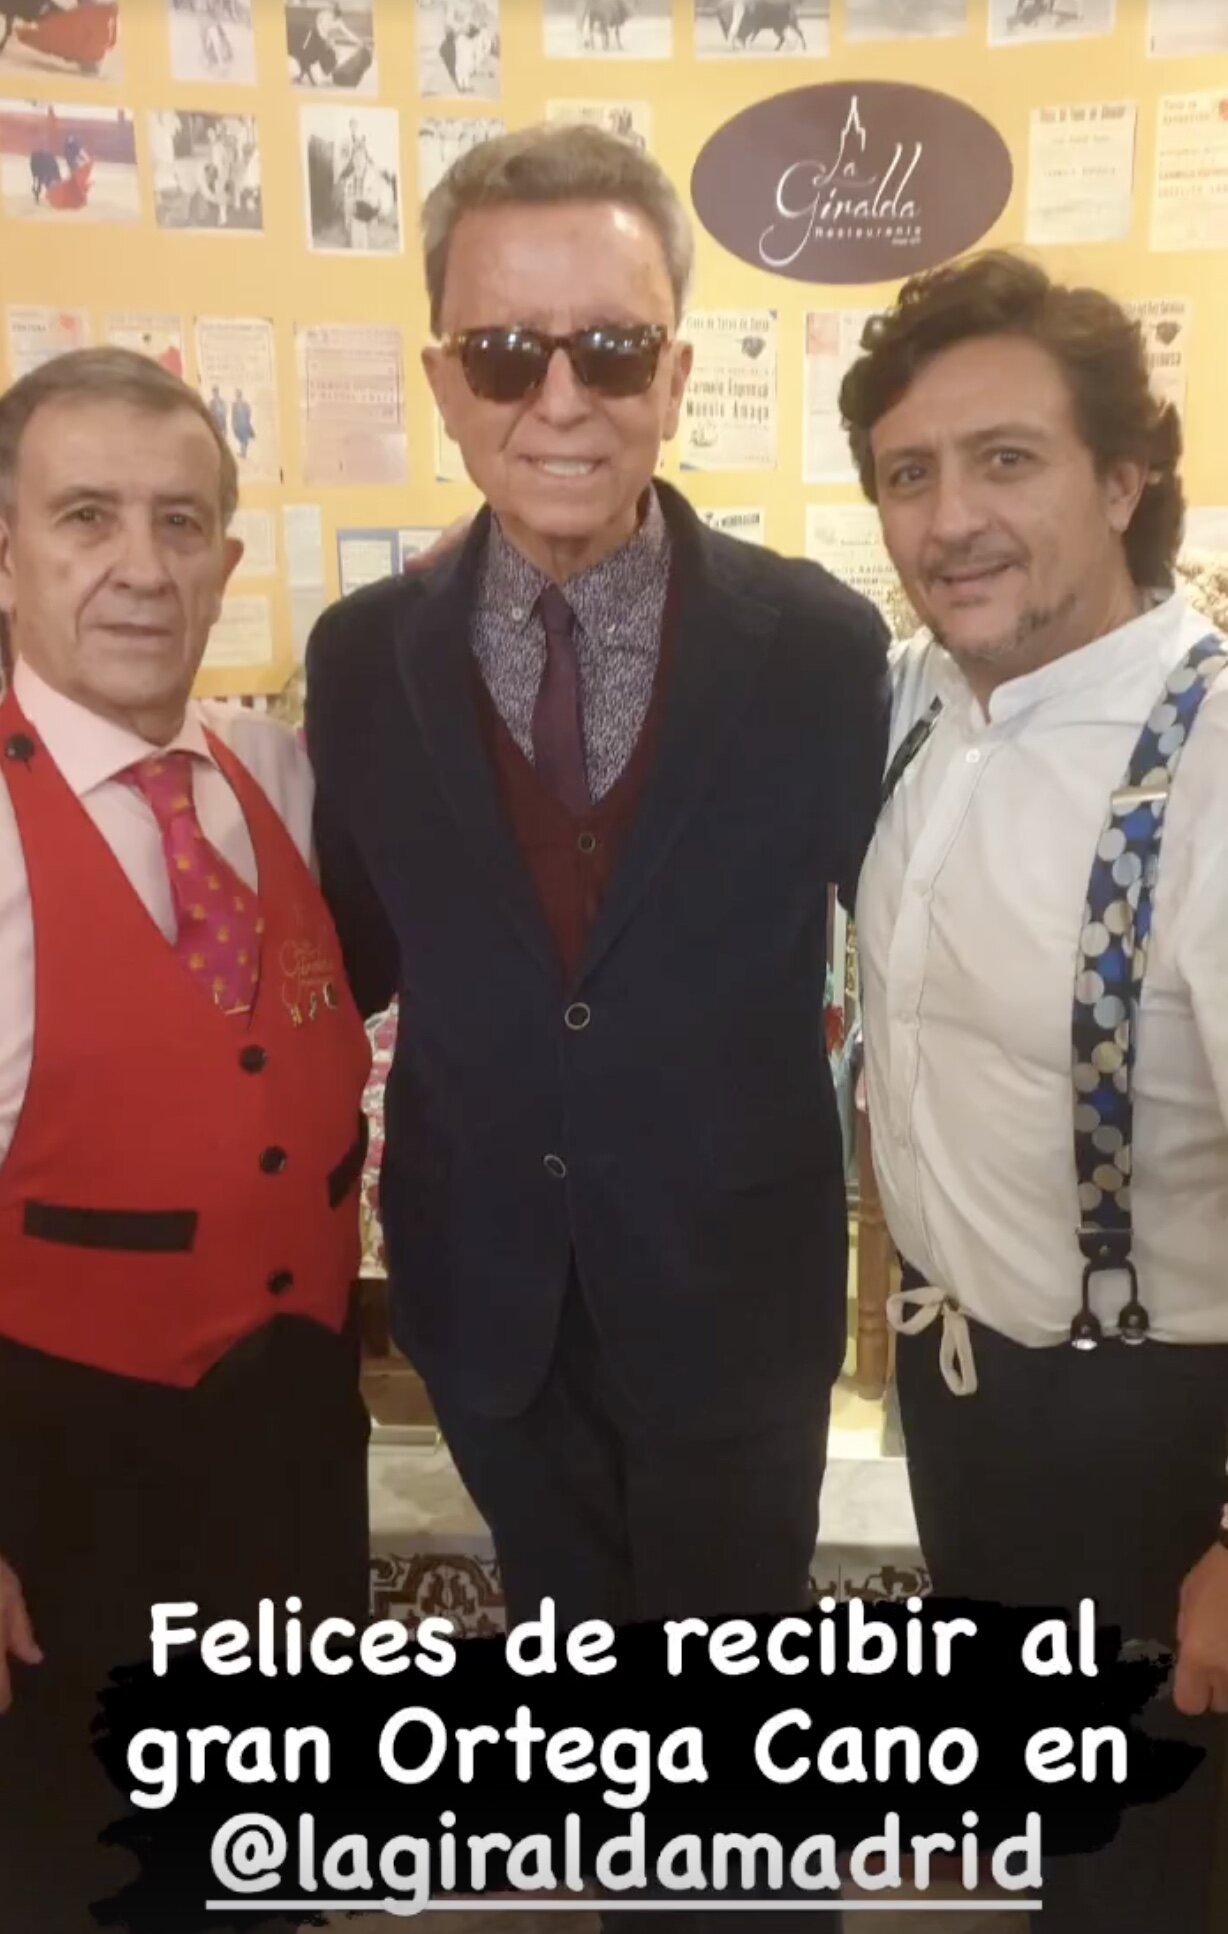 Ortega Cano en la fiesta flamenca | Instagram